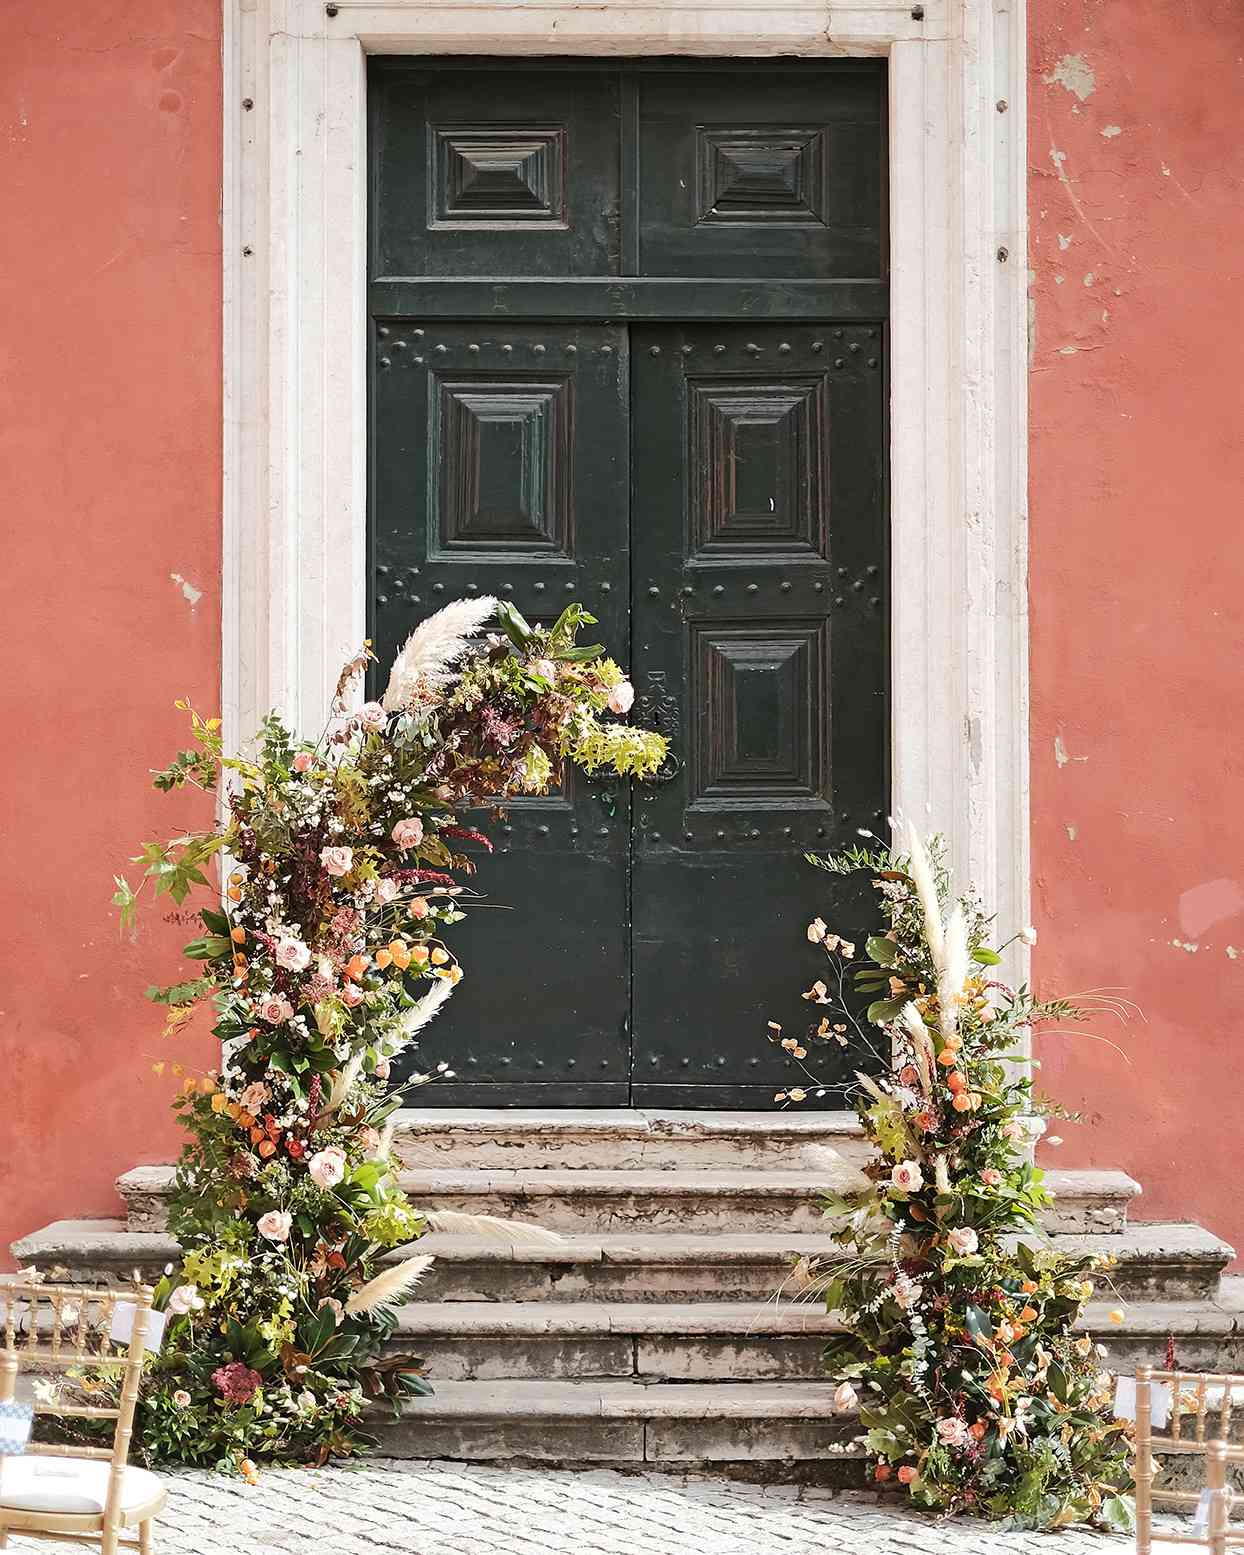 emily scott wedding arch in front of doorway